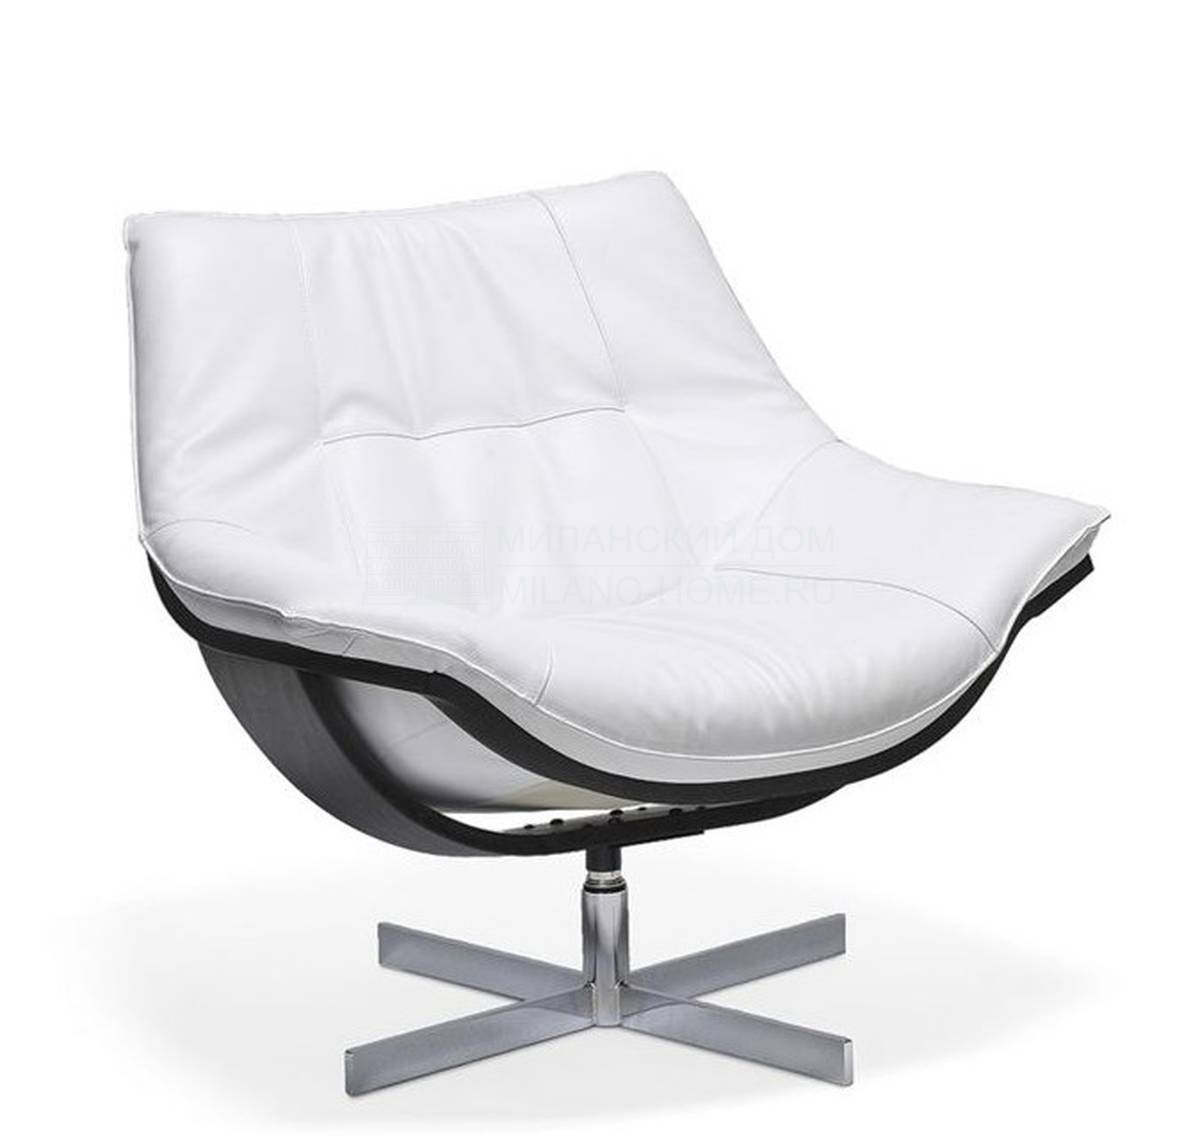 Кожаное кресло Flight armchair из Франции фабрики ROCHE BOBOIS